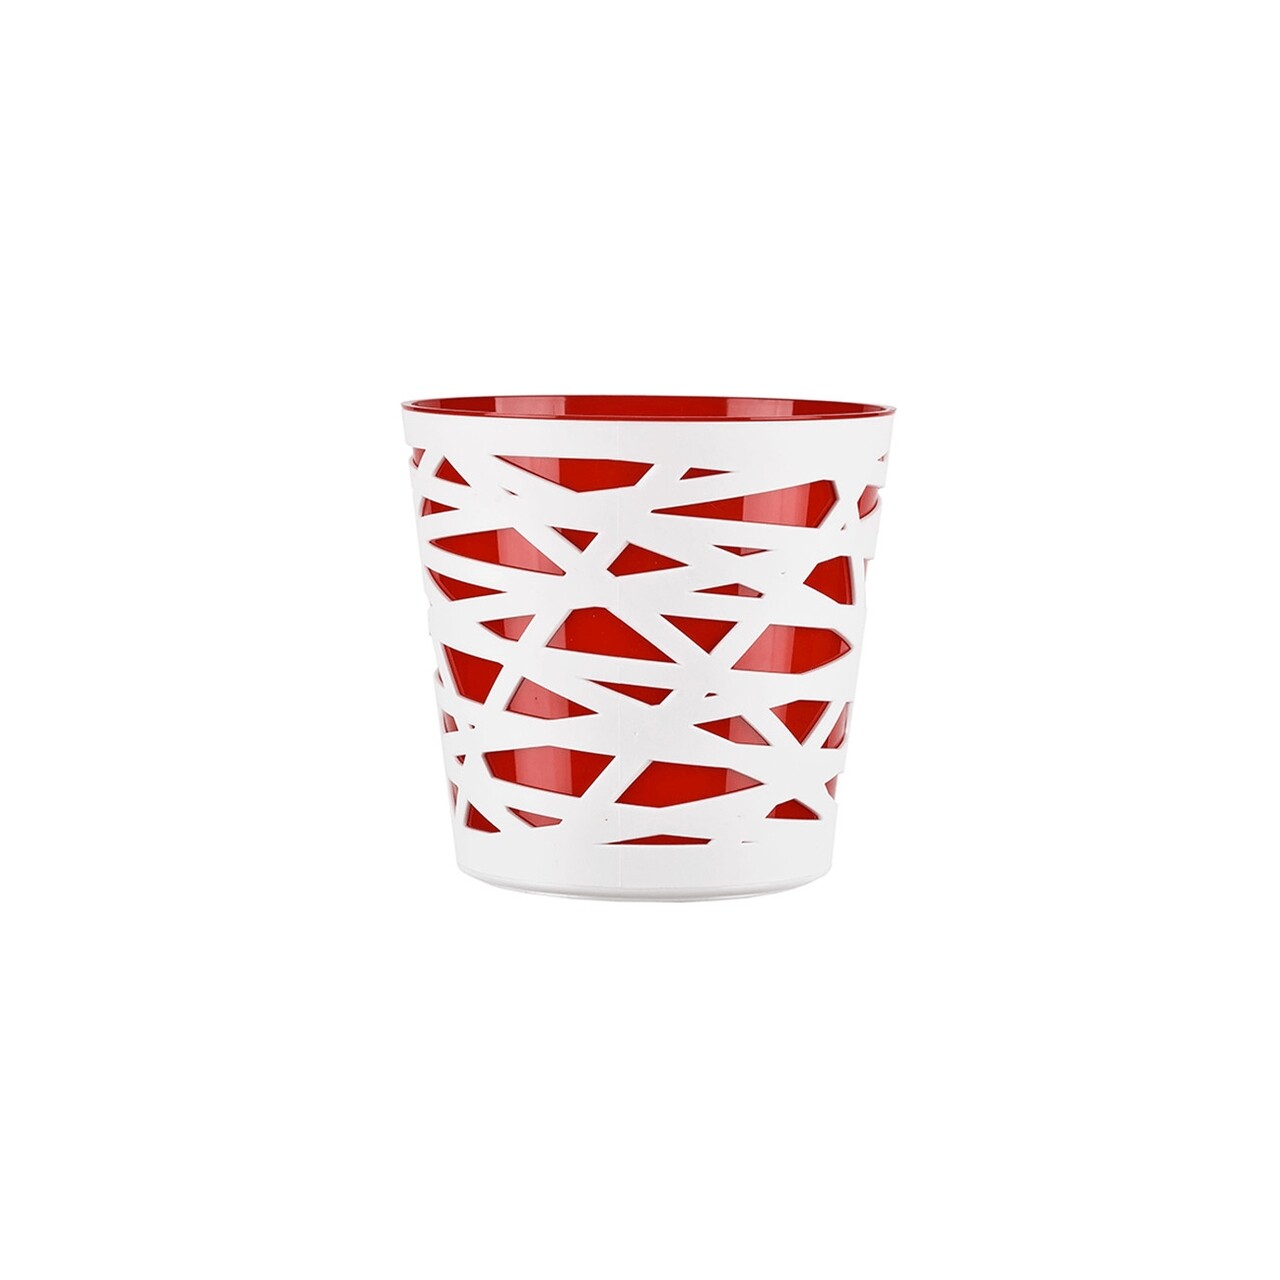 Beti Virágkaspó, 15 cm, műanyag, piros/fehér